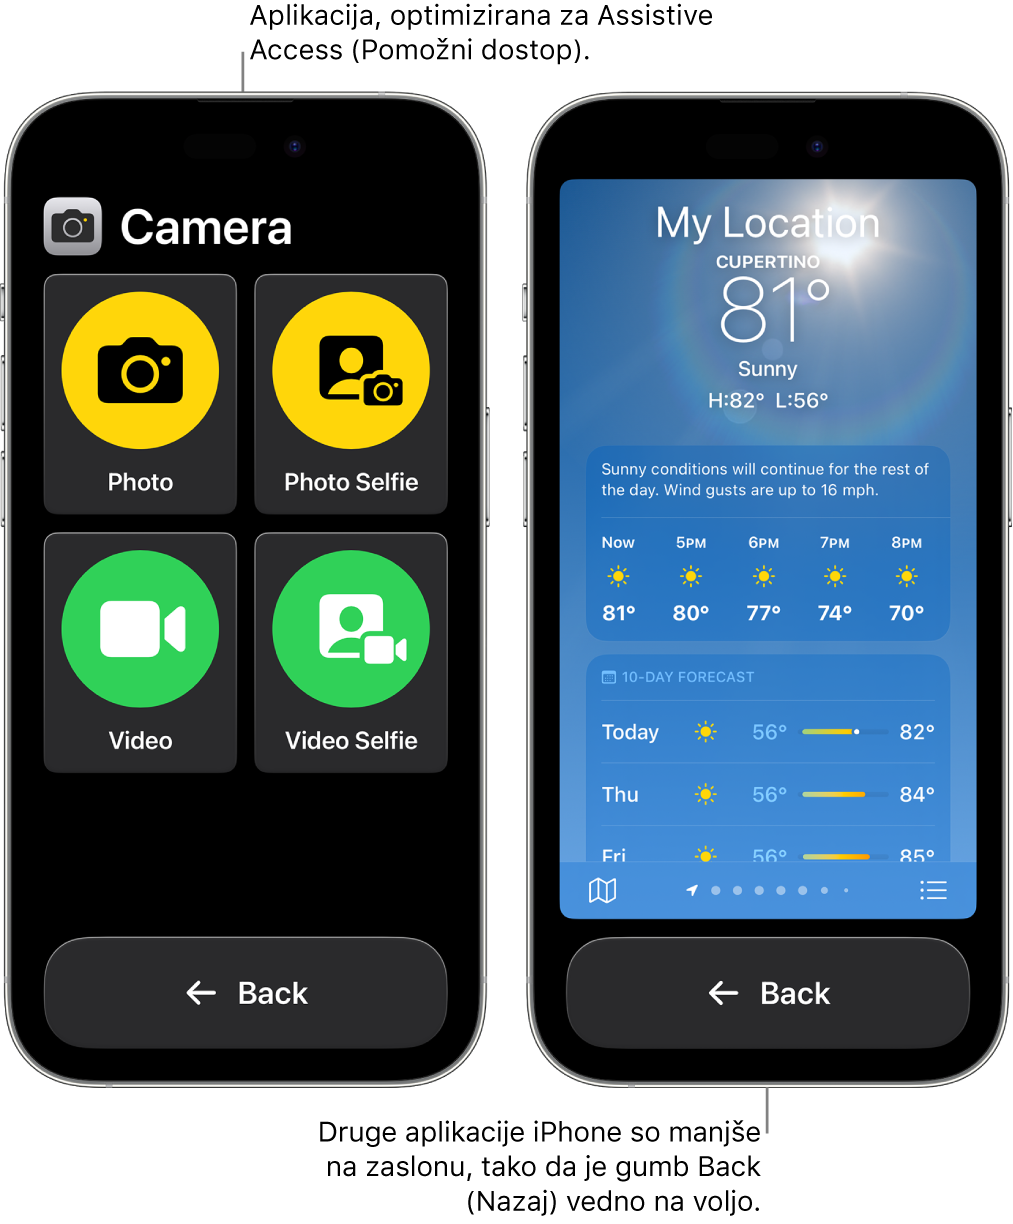 Dva iPhona v funkciji Assistive Access. En iPhone prikazuje aplikacijo, zasnovano za Assistive Access, z veliko mrežo gumbov. Drugi iPhone prikazuje aplikacijo, ki ni narejena za Assistive Access in je v izvirni zasnovi. Aplikacija je manjša na zaslonu z velikim gumbom Back na dnu.